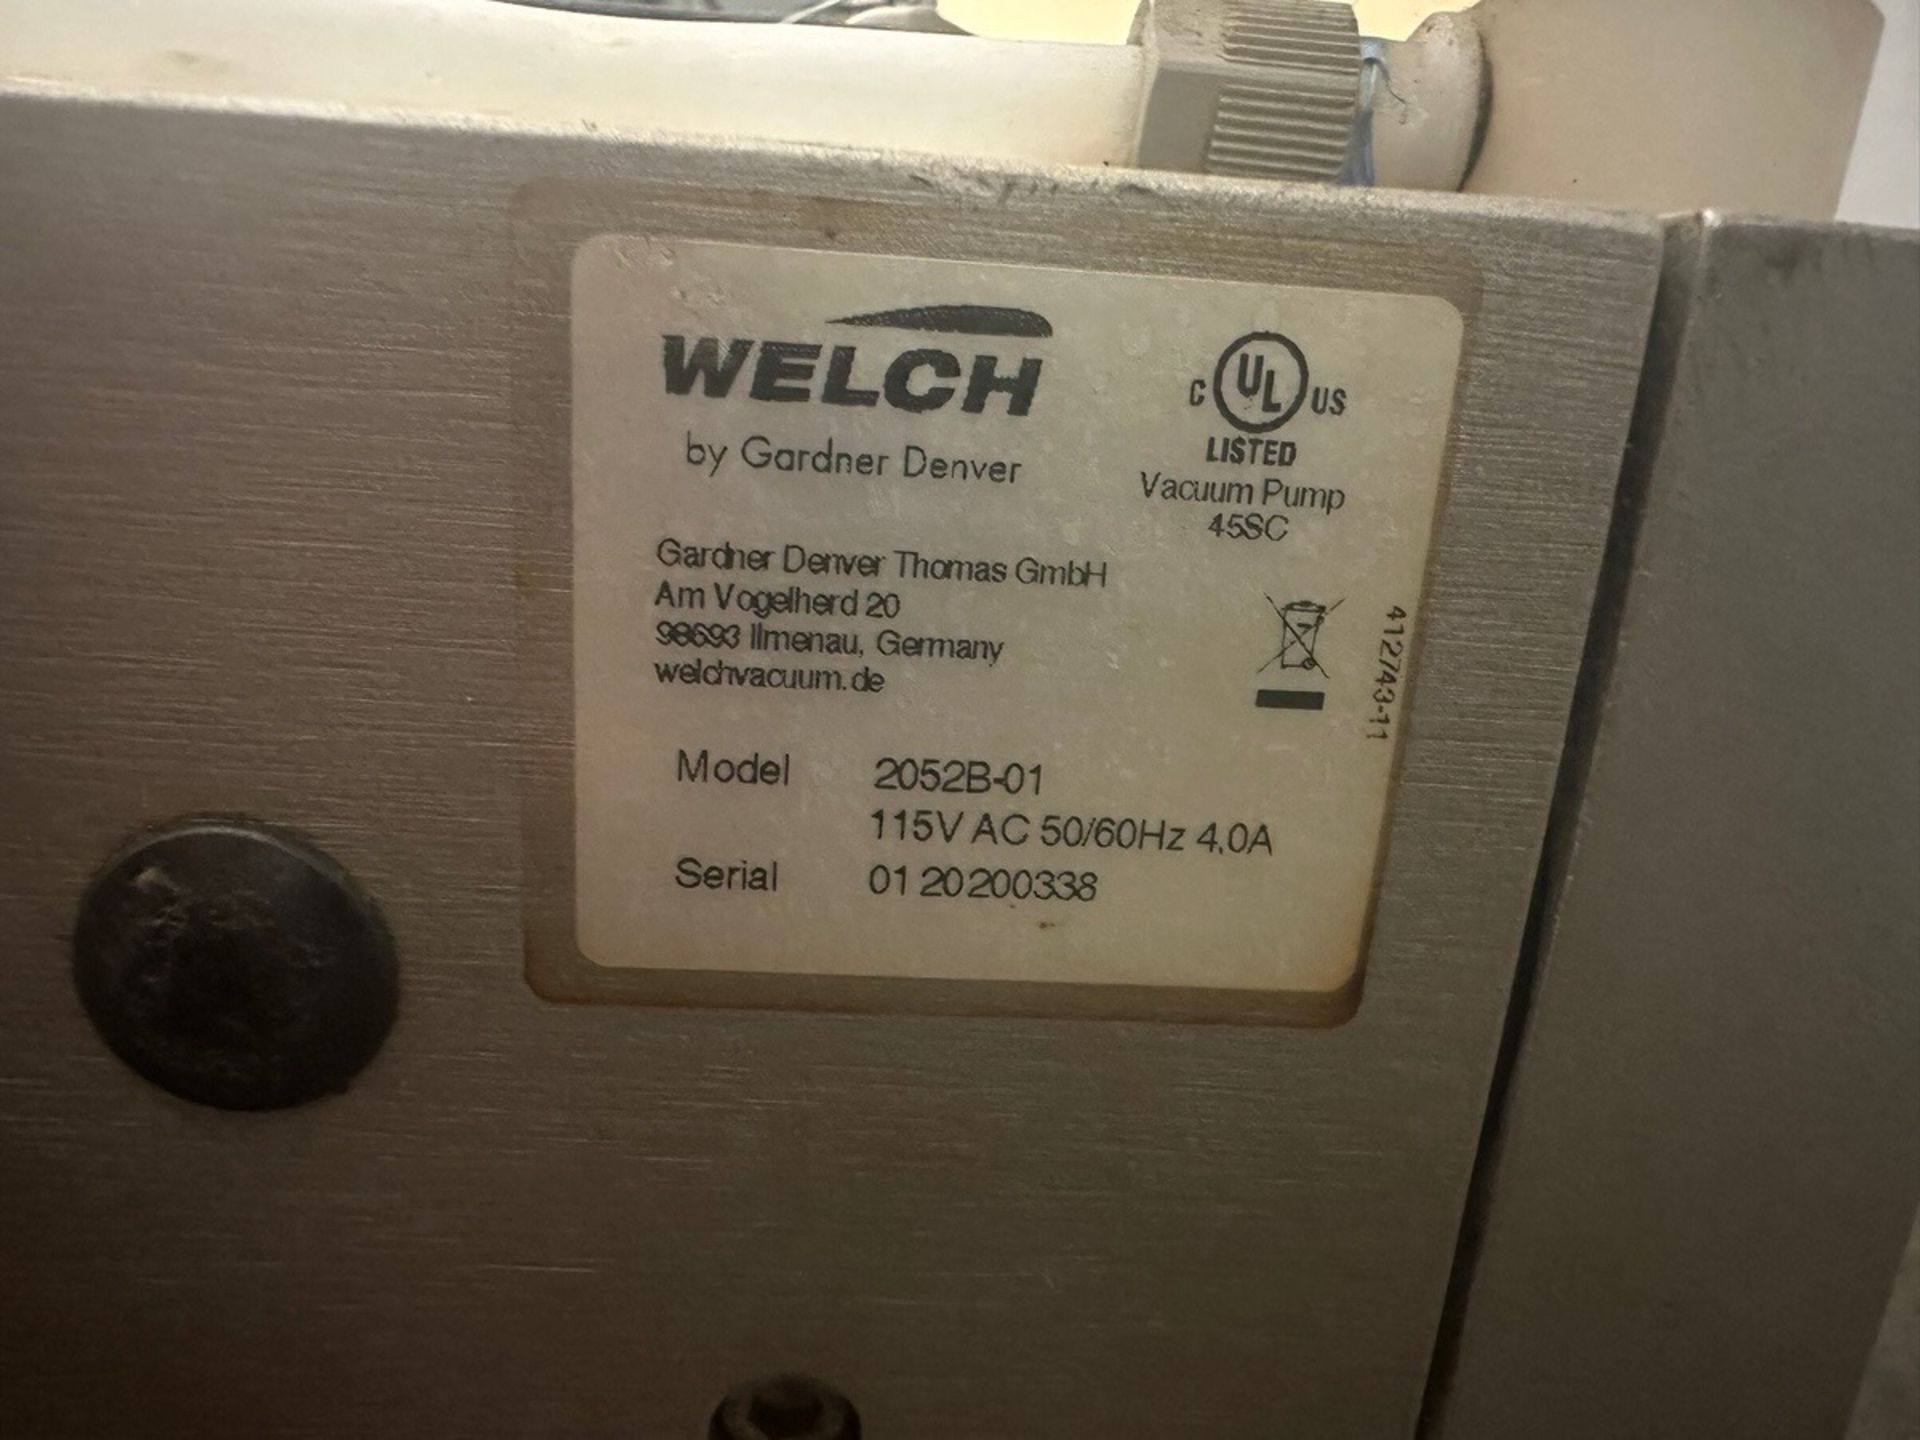 Welch Vacuum Pump, Model 2052B-01, S/N 0120200338 | Rig Fee $20 - Image 2 of 2